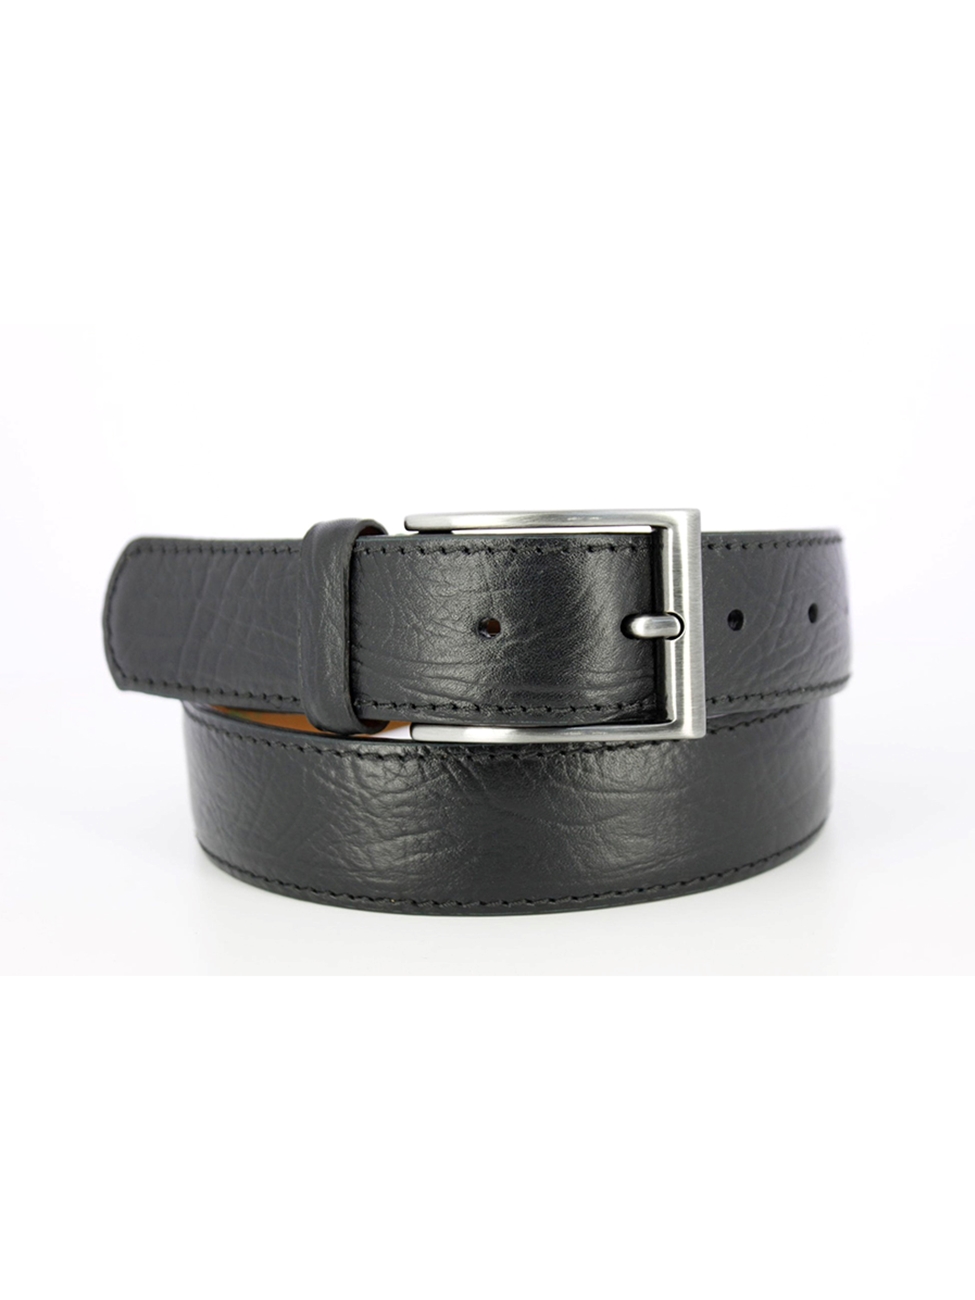 Black Textured Leather Nickel Buckle Men's Belt | Mephisto Belts ...